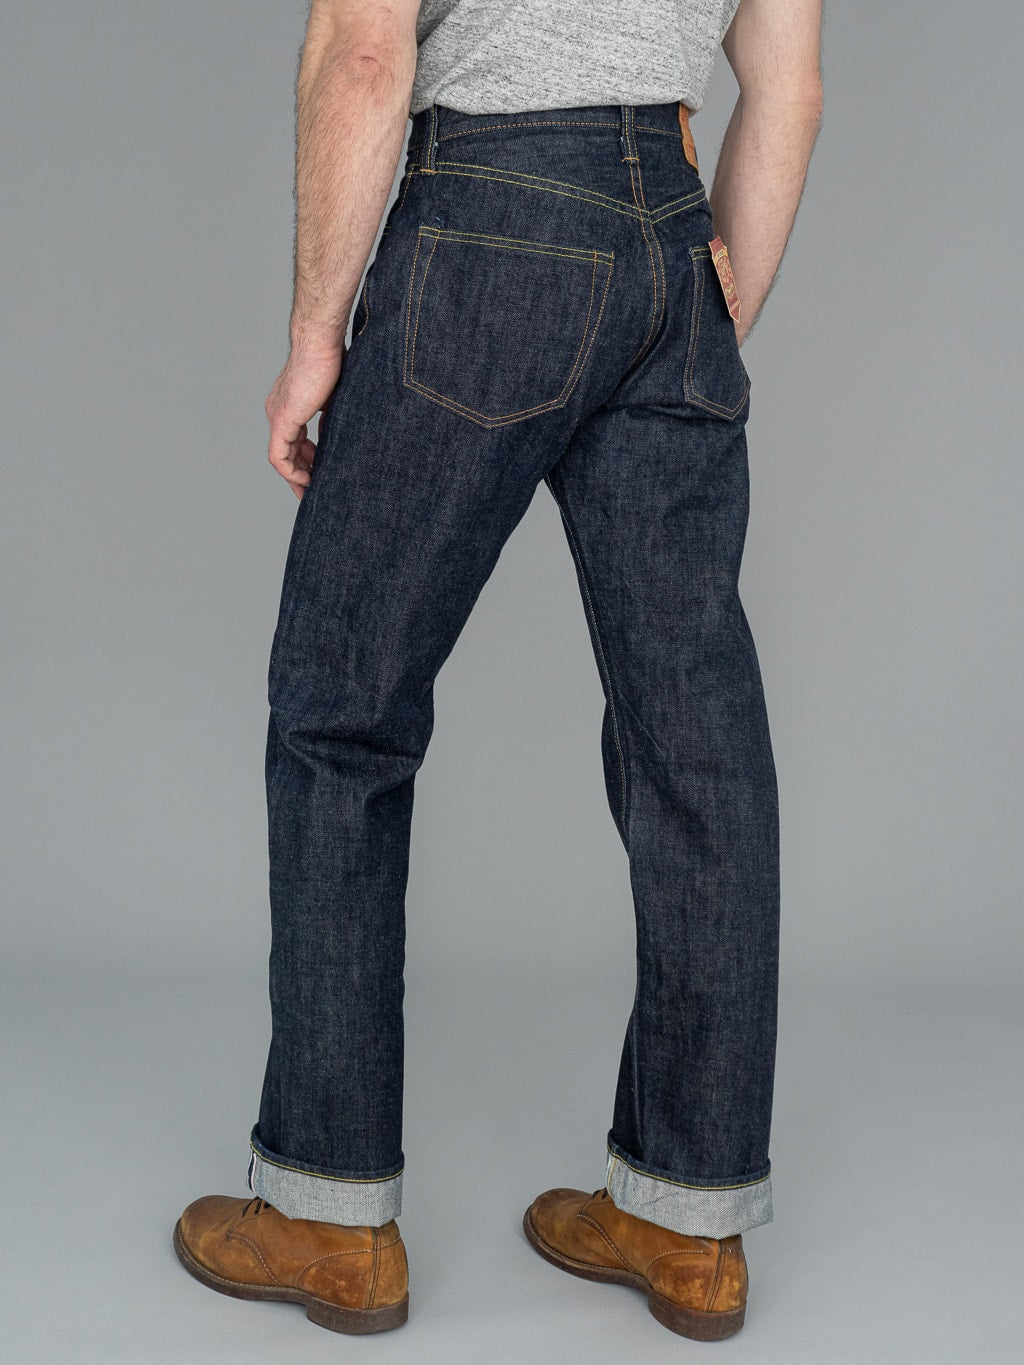 sugar cane SC41947 14.25oz denim 1947 model regular straight jeans back fit